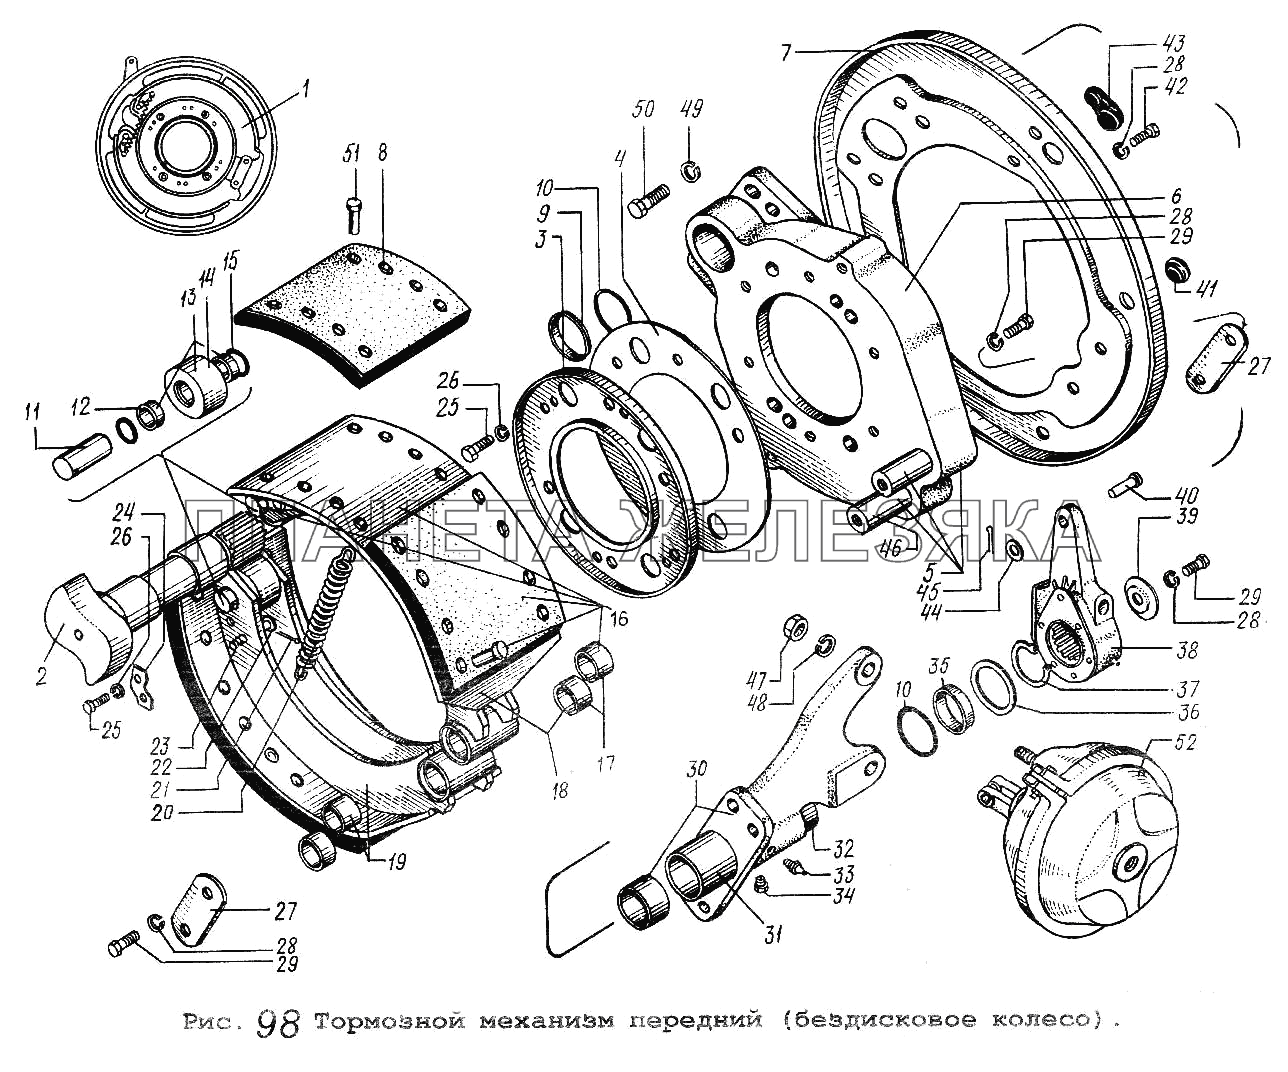 Тормозной механизм передний (бездисковое колесо) МАЗ-5337